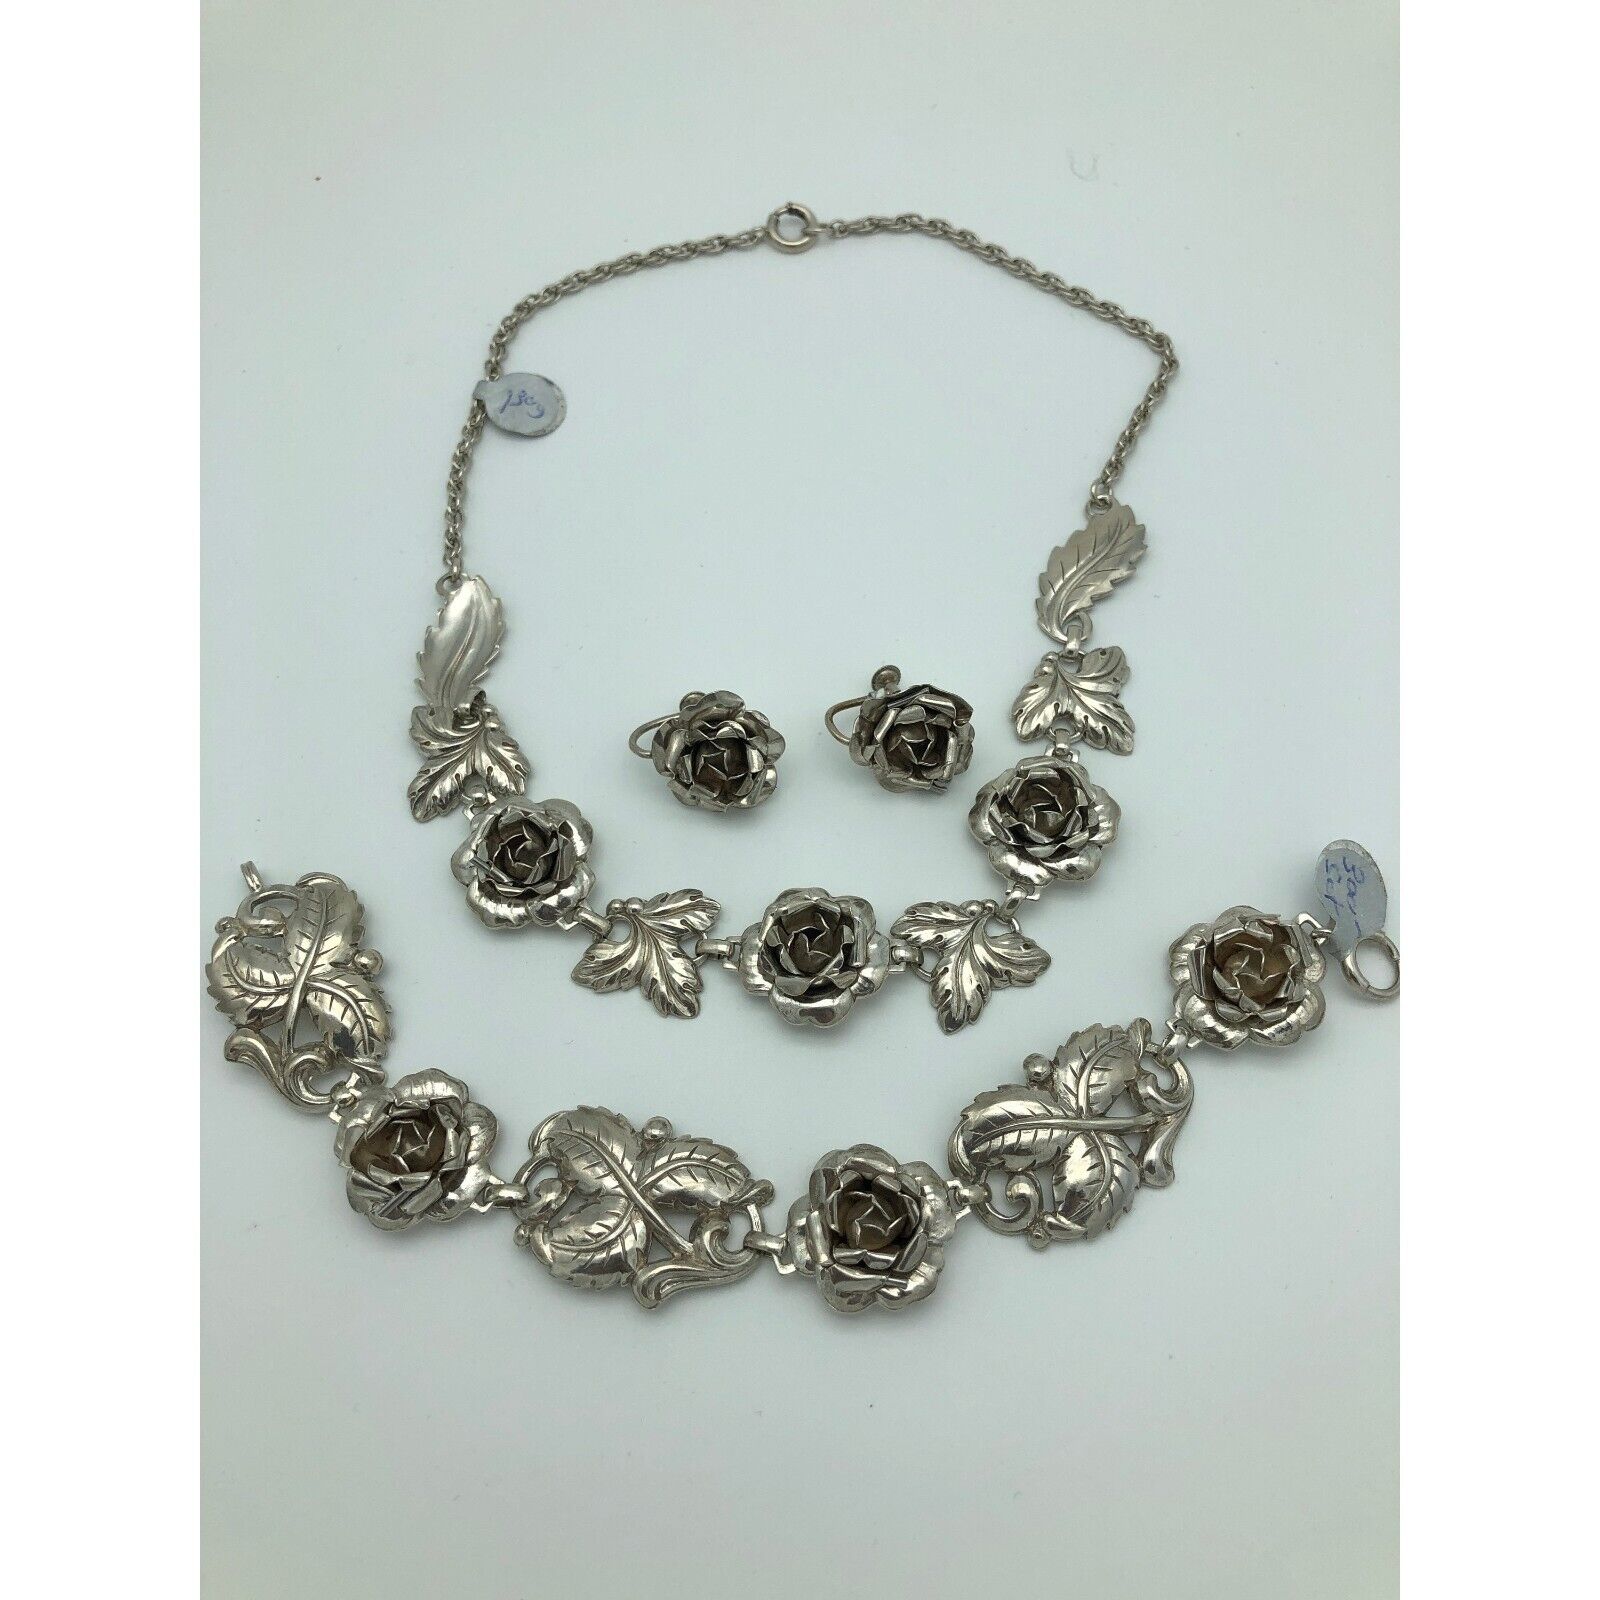 Vintage Sterling Silver English Rose Necklace Bracelet Earrings Set